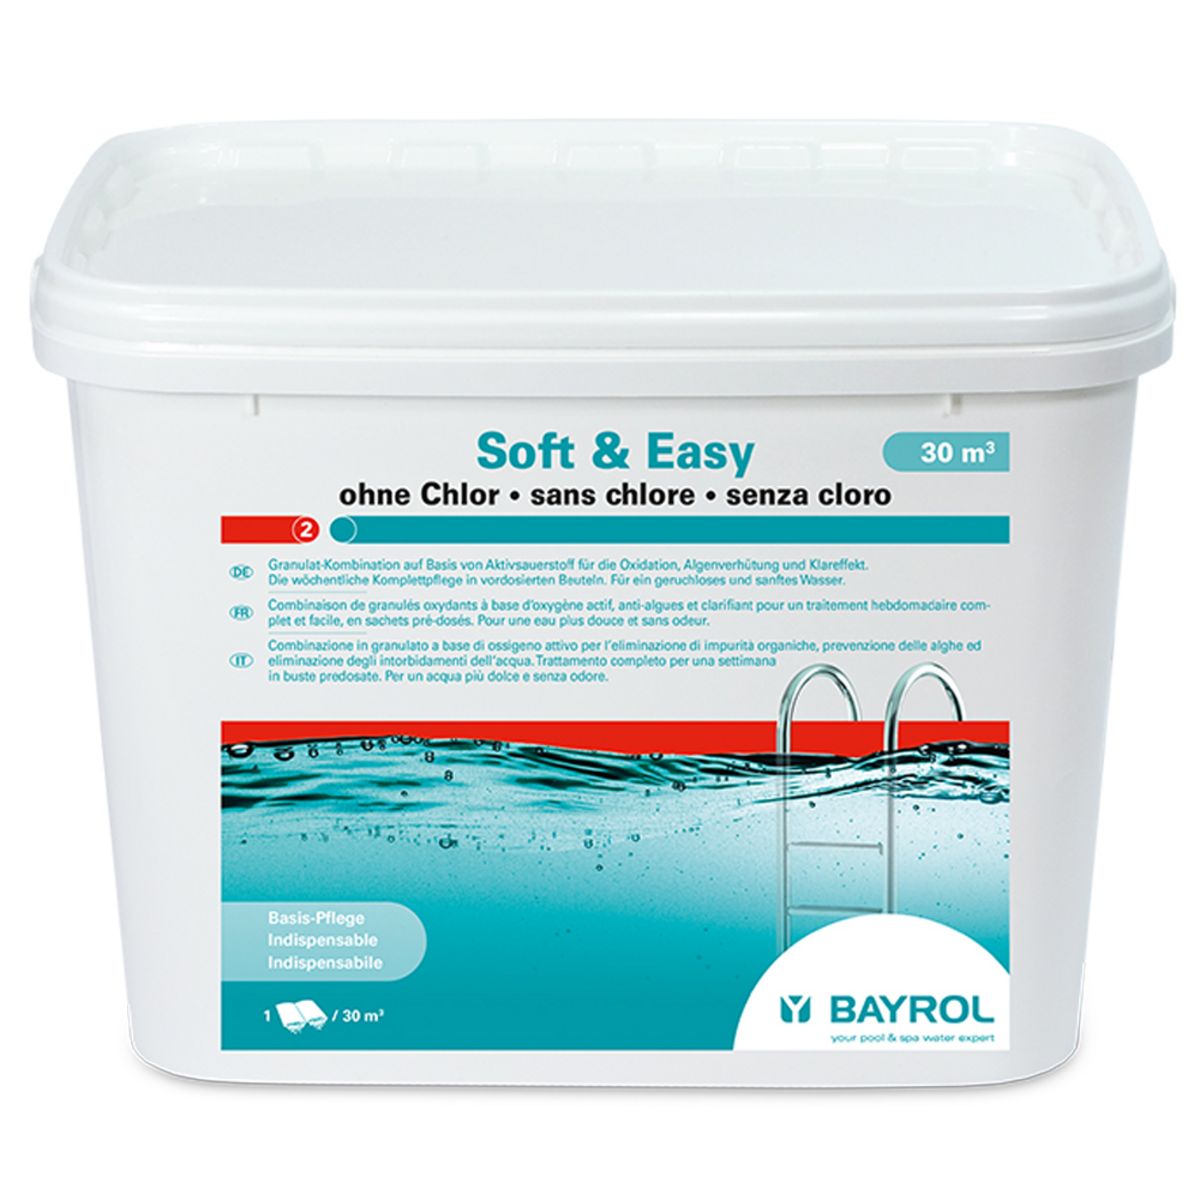 Bayrol Traitement complet à l'oxygène actif 5.04kg - soft & easy 30